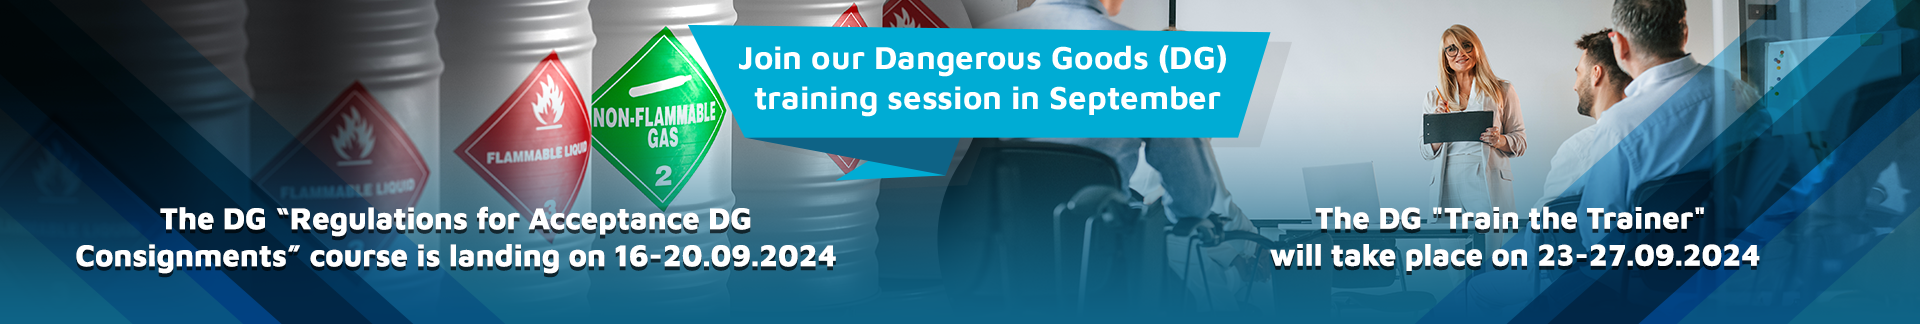 Dangerous Goods Training Session in September